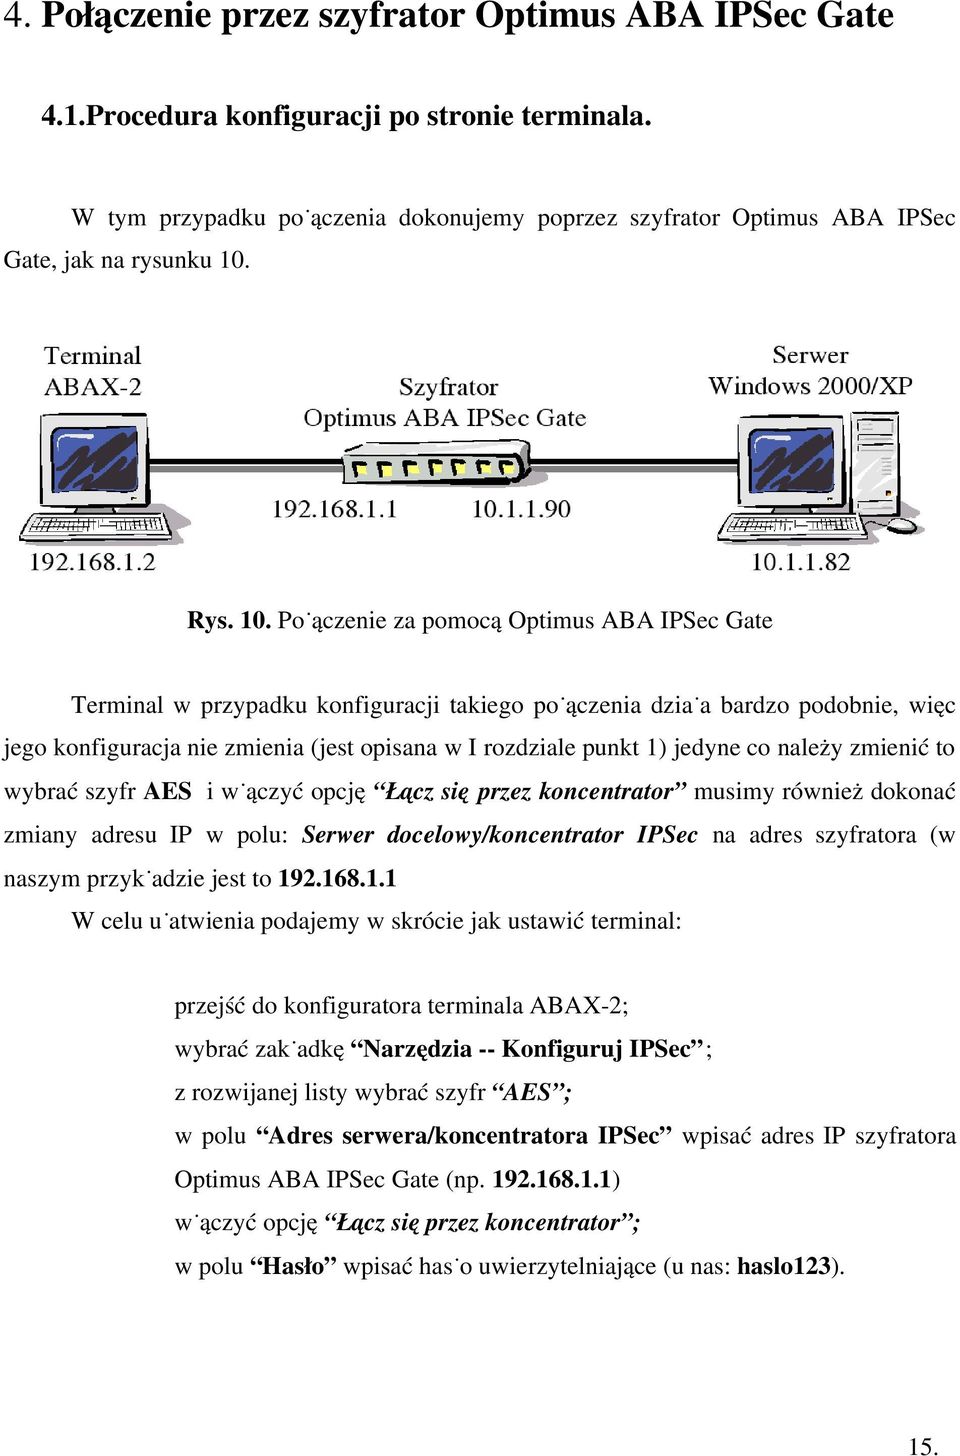 Połączenie za pomocą Optimus ABA IPSec Gate Terminal w przypadku konfiguracji takiego połączenia działa bardzo podobnie, więc jego konfiguracja nie zmienia (jest opisana w I rozdziale punkt 1) jedyne